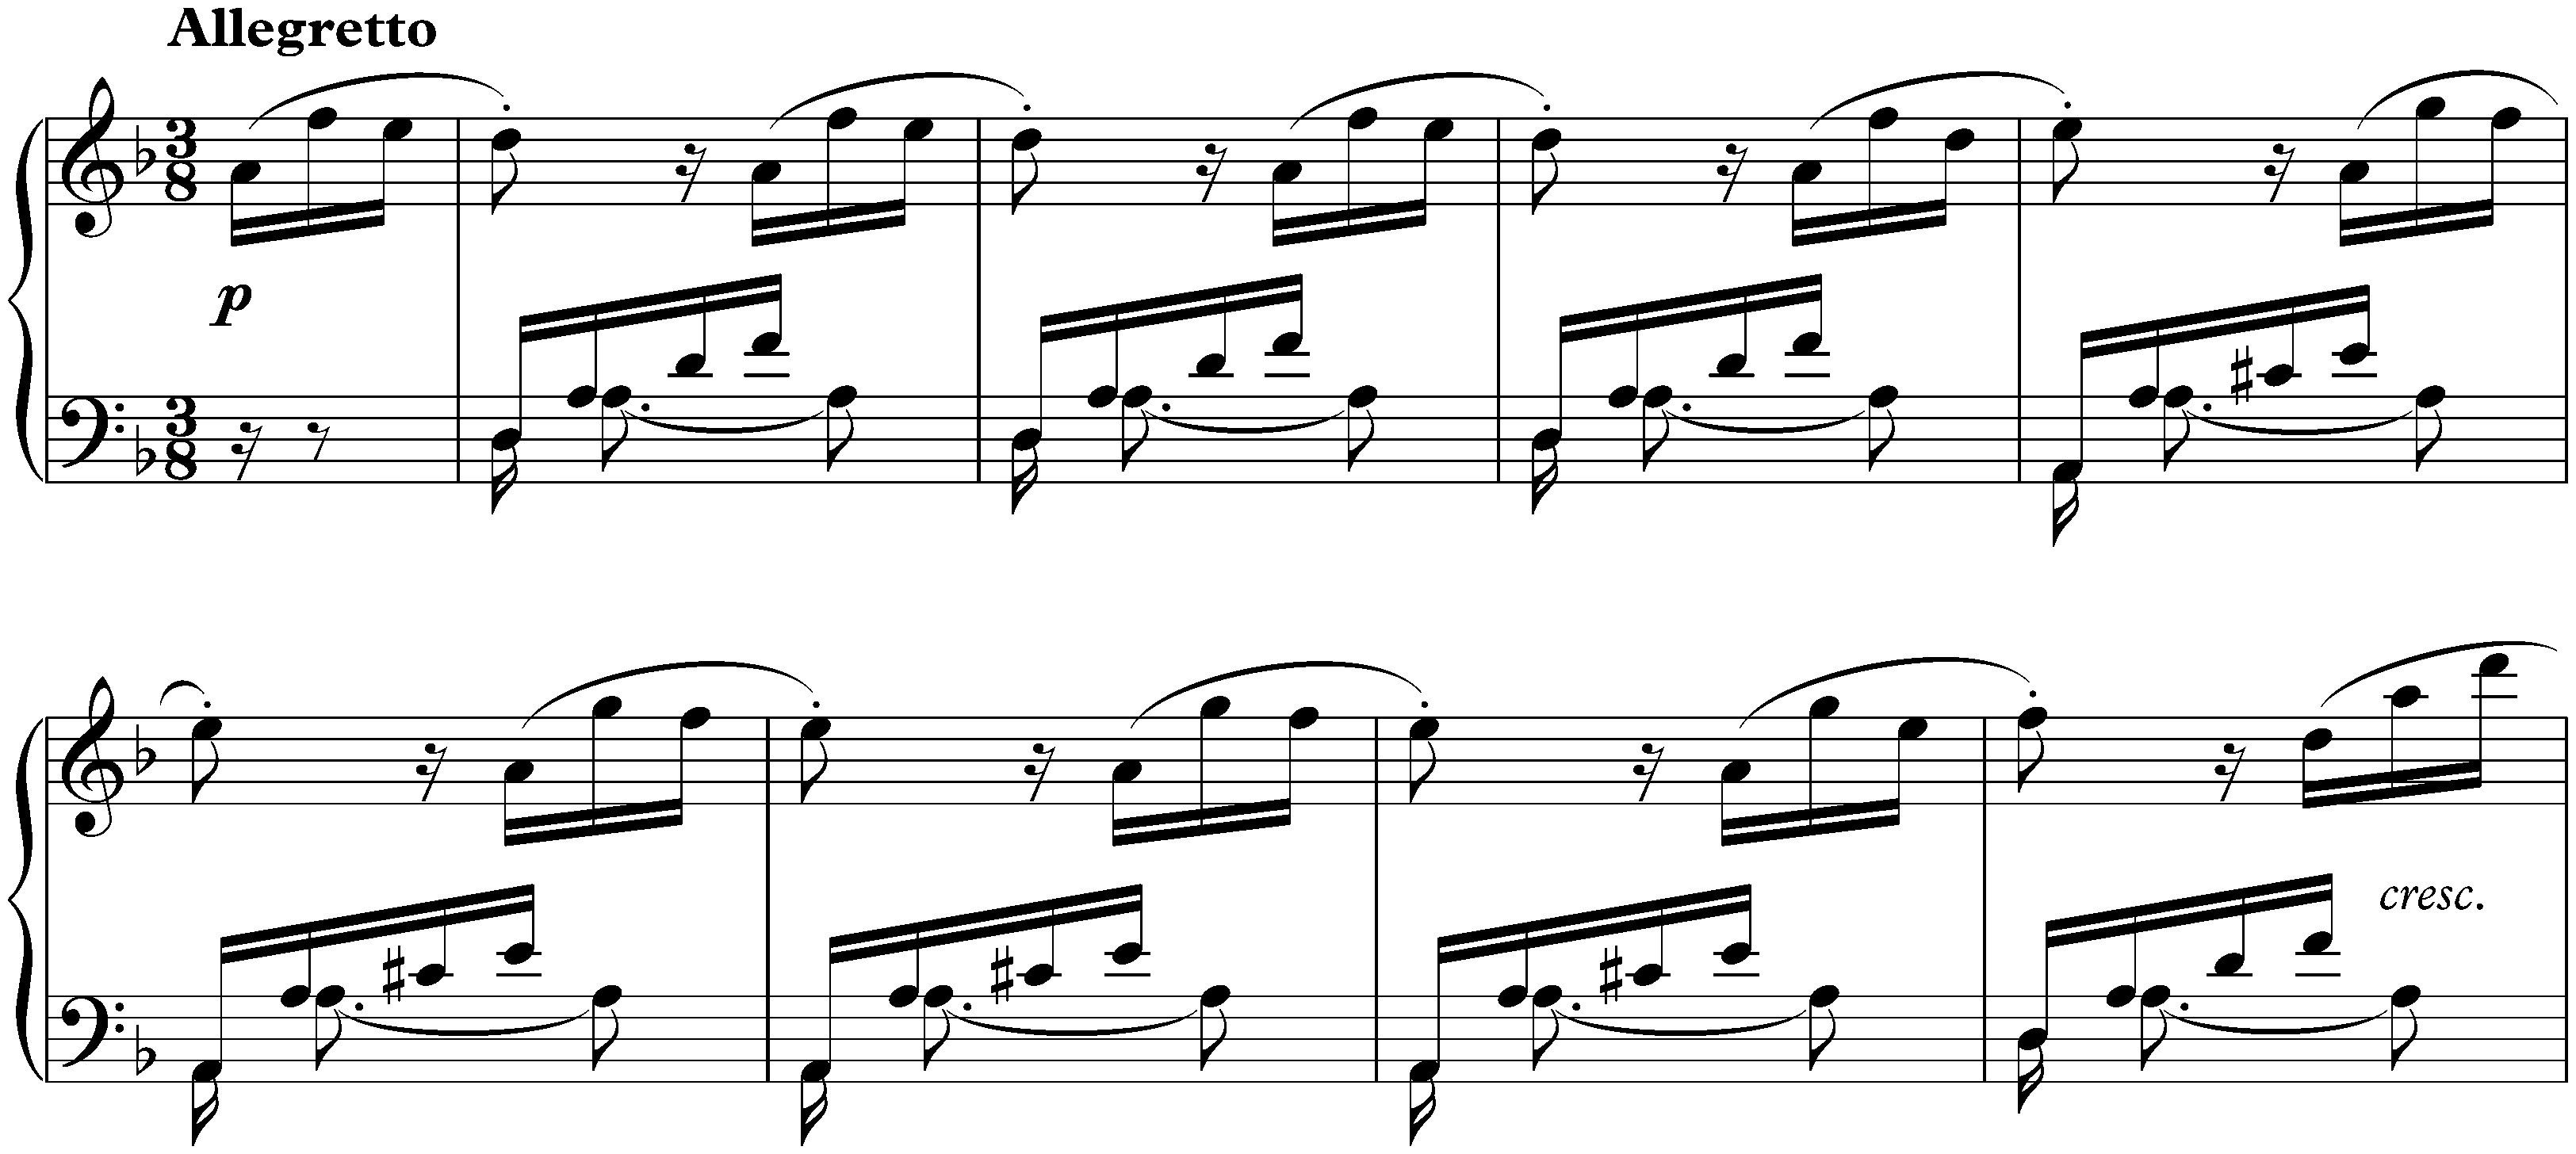 Sonata no. 17 in D minor, op. 31 no. 2; 3. Allegretto